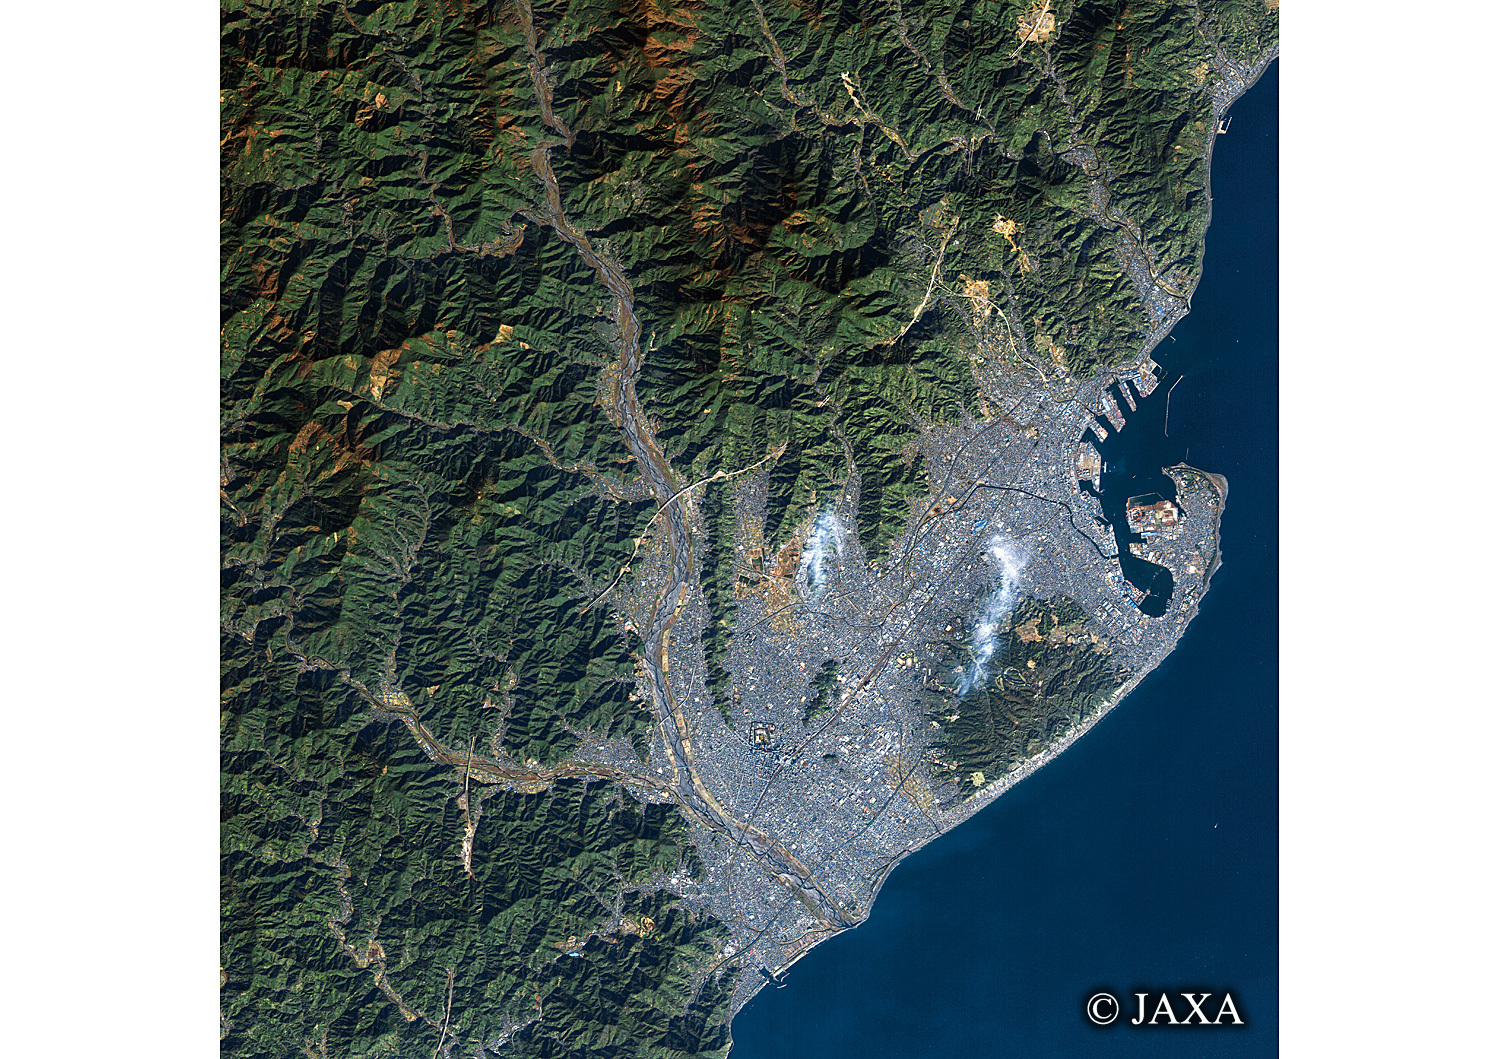 だいちから見た日本の都市 静岡市:衛星画像